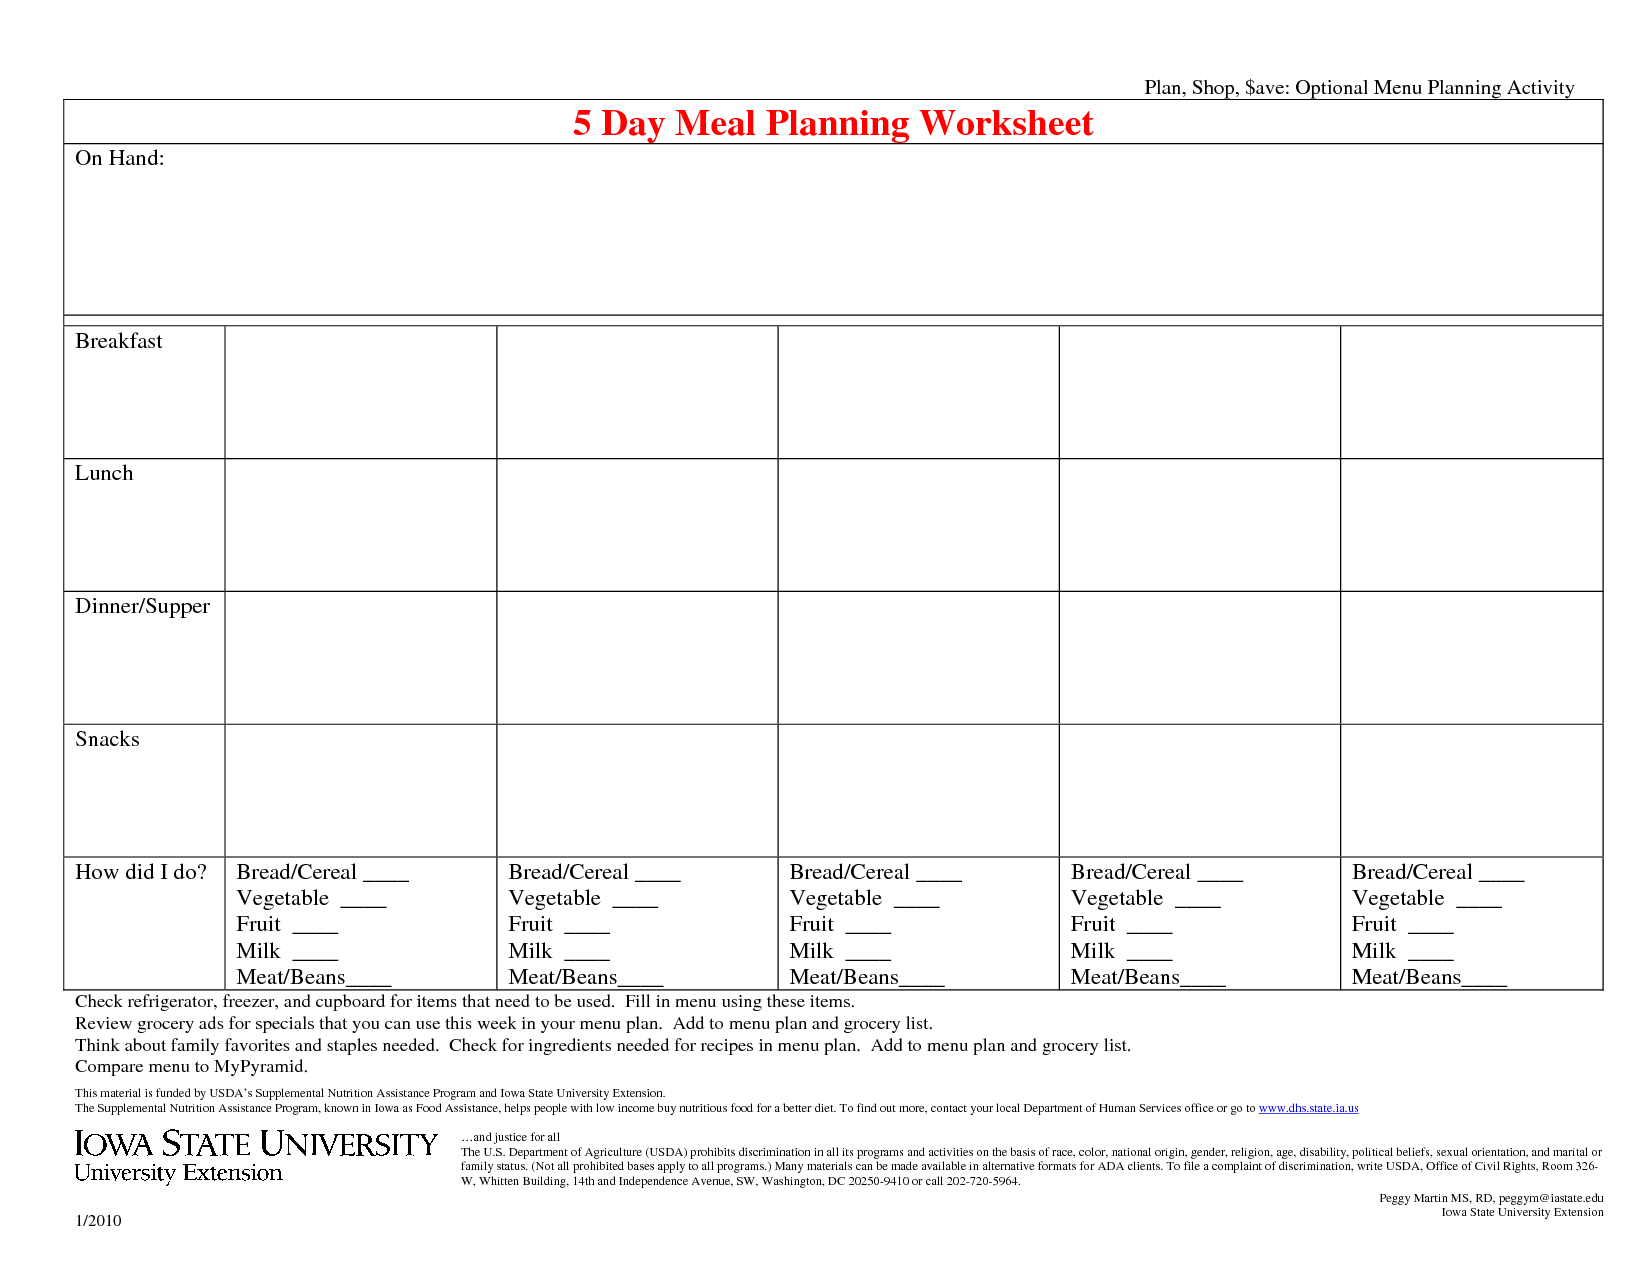 12-best-images-of-weekly-menu-planning-worksheet-printable-weekly